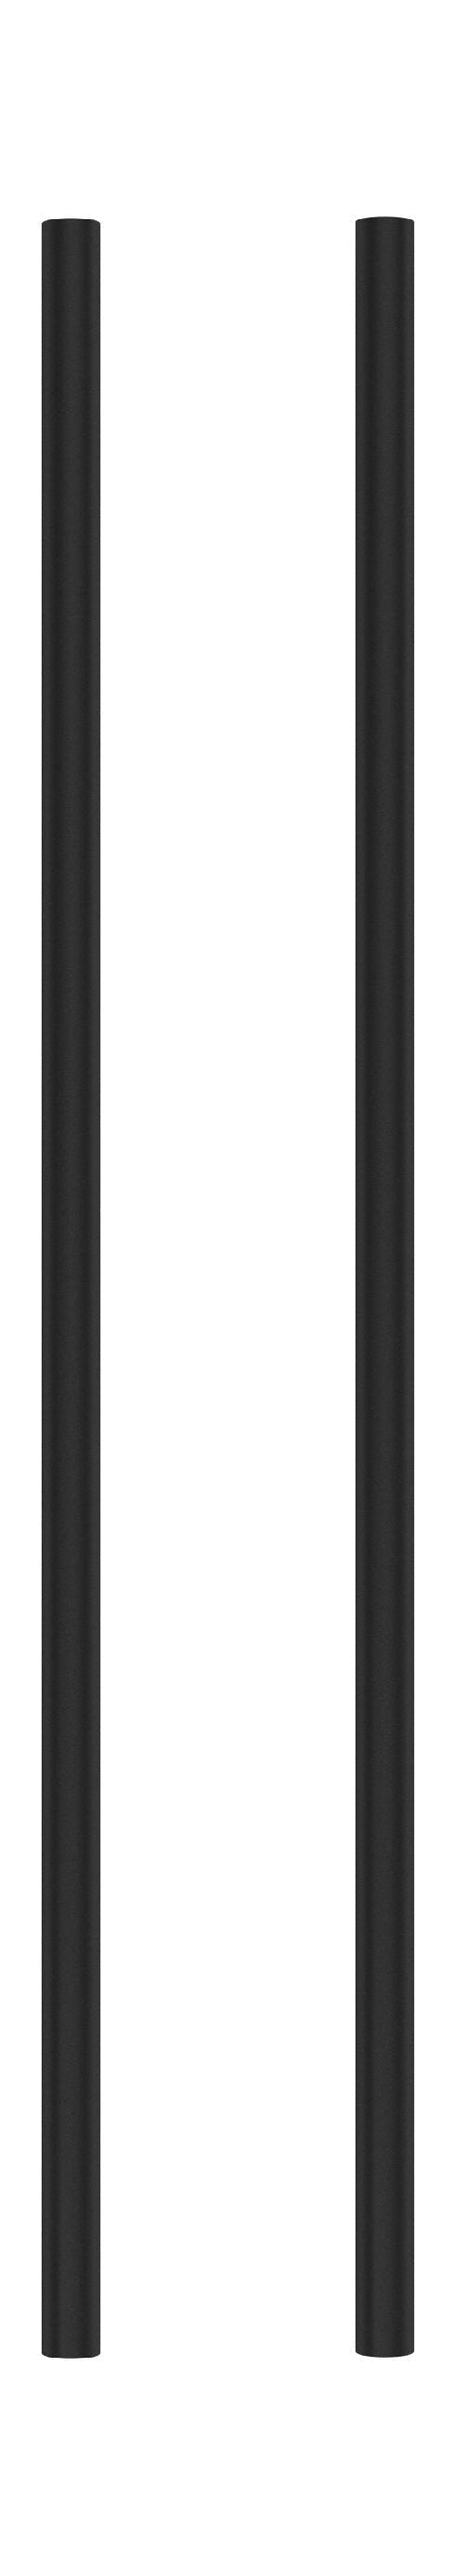 Moebe -Regalsystem/Wandregalbein 65 cm, schwarz